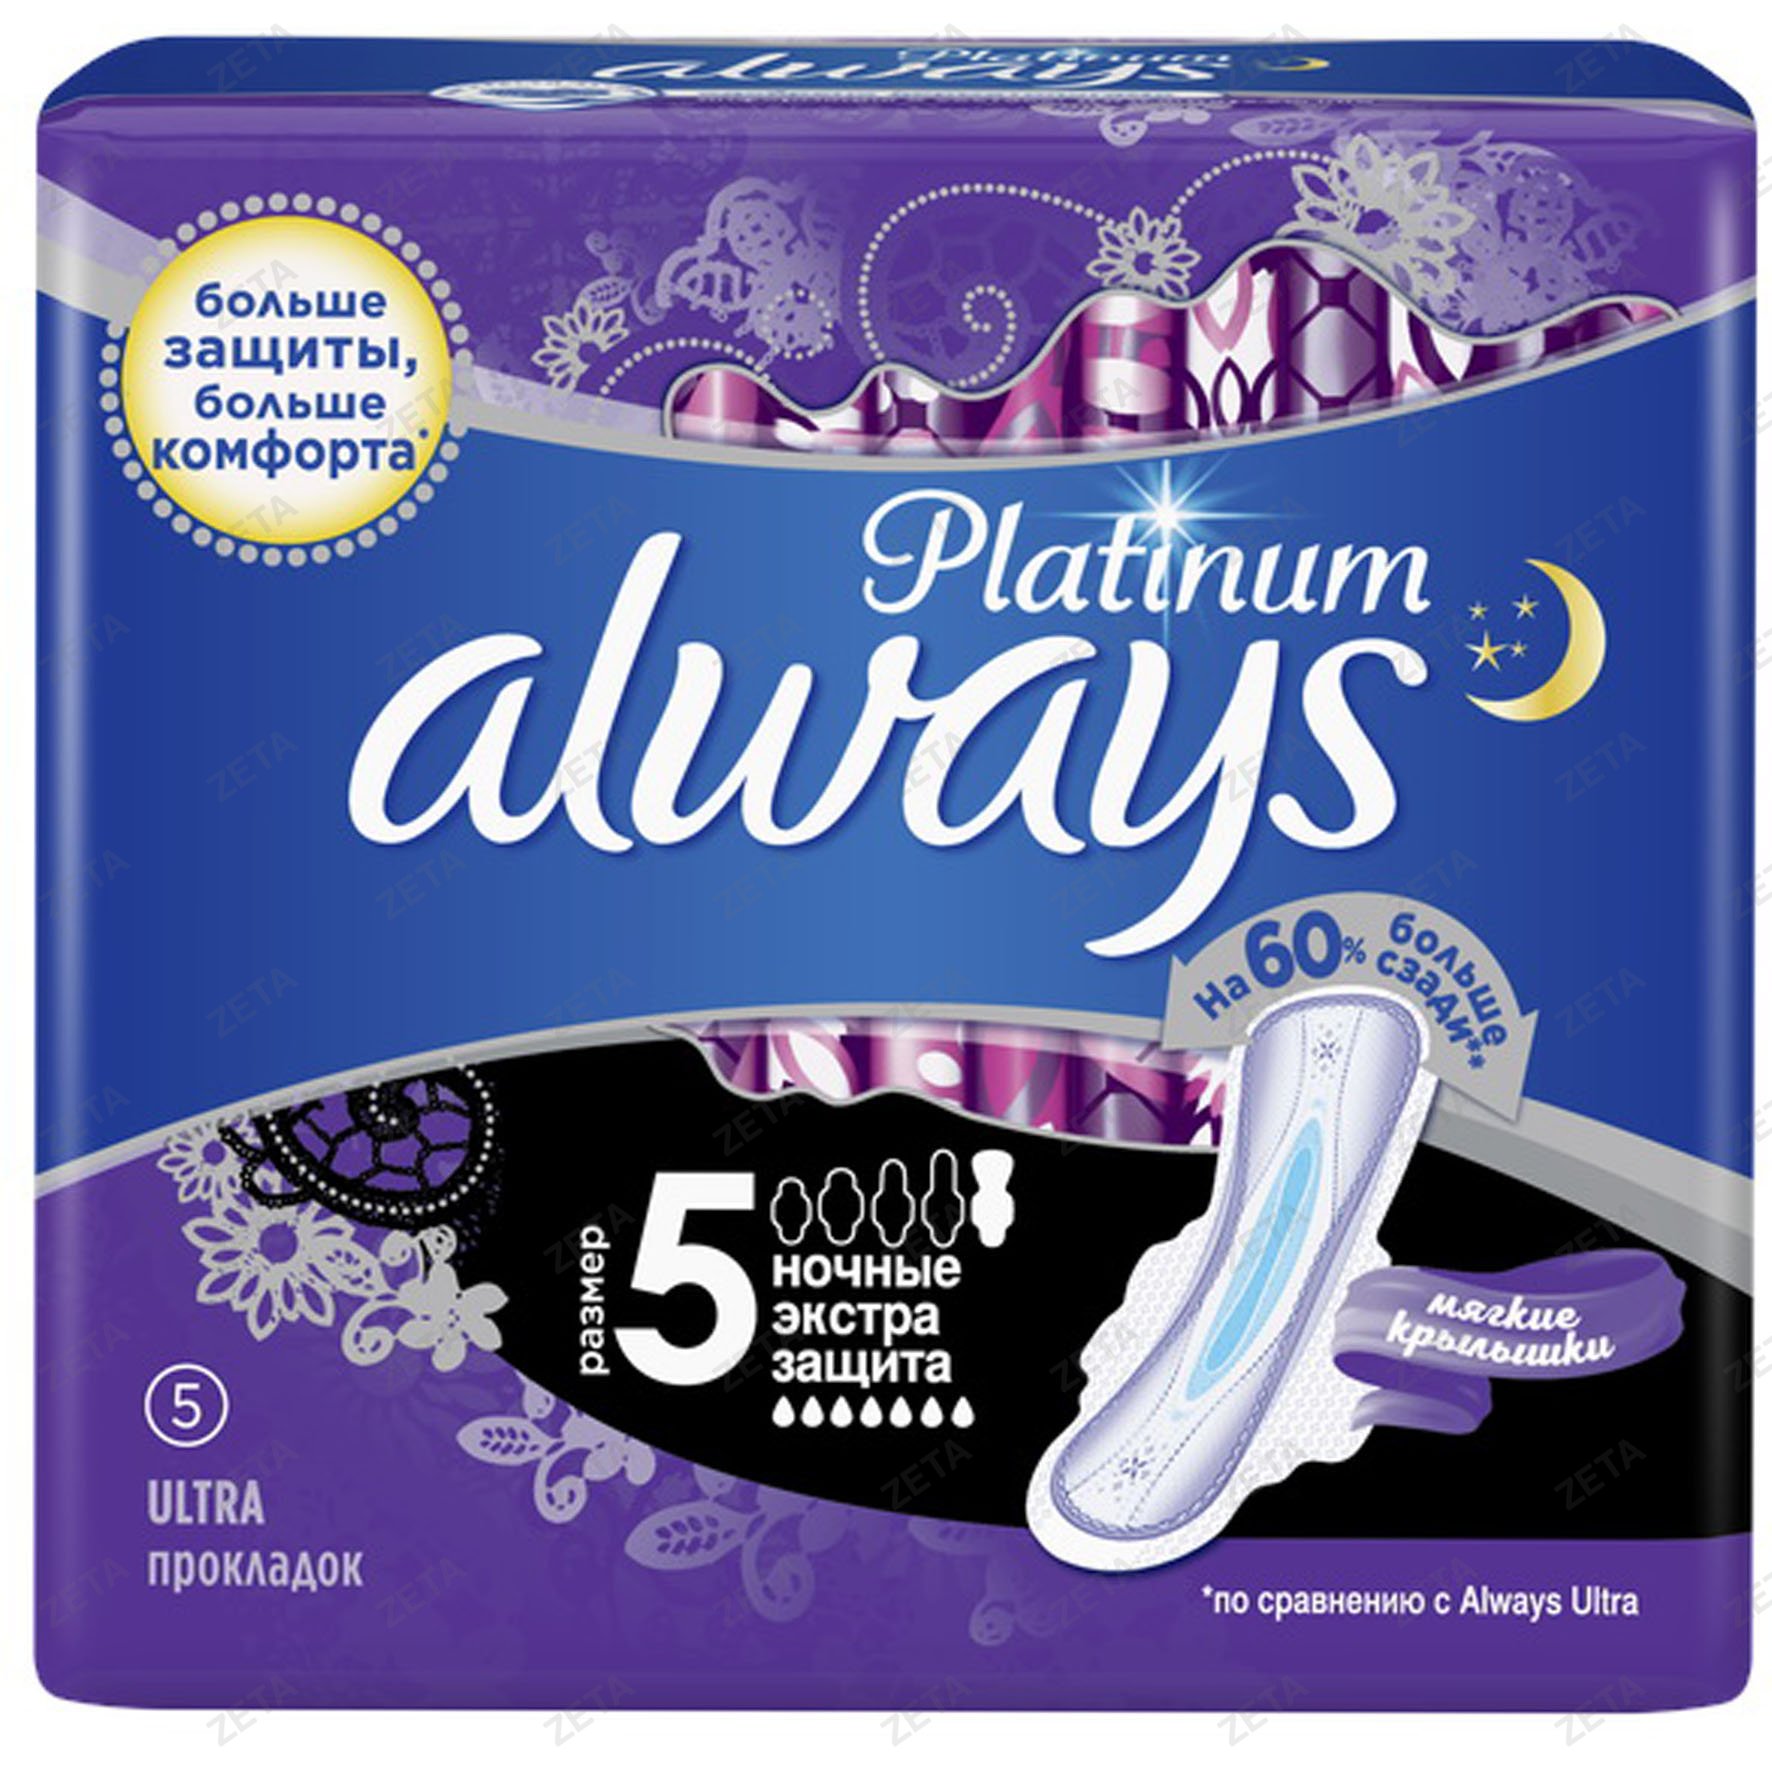 Женские гигиенические прокладки "Always Ultra Platinum"( ночные экстра защита) 5 шт.